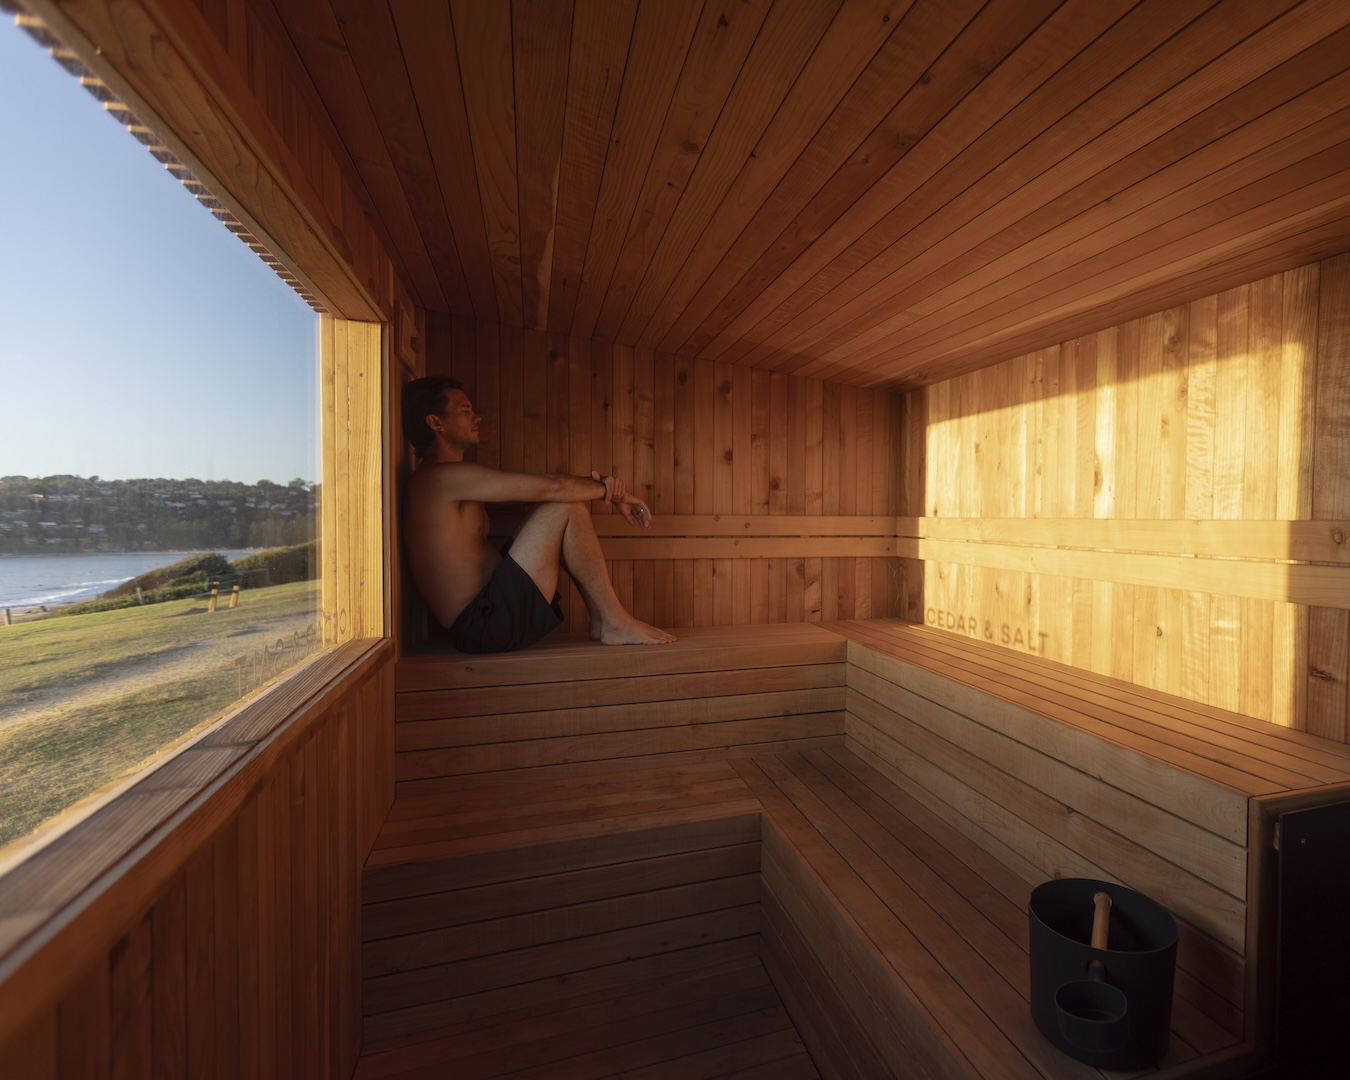 cedar and salt sauna sydney